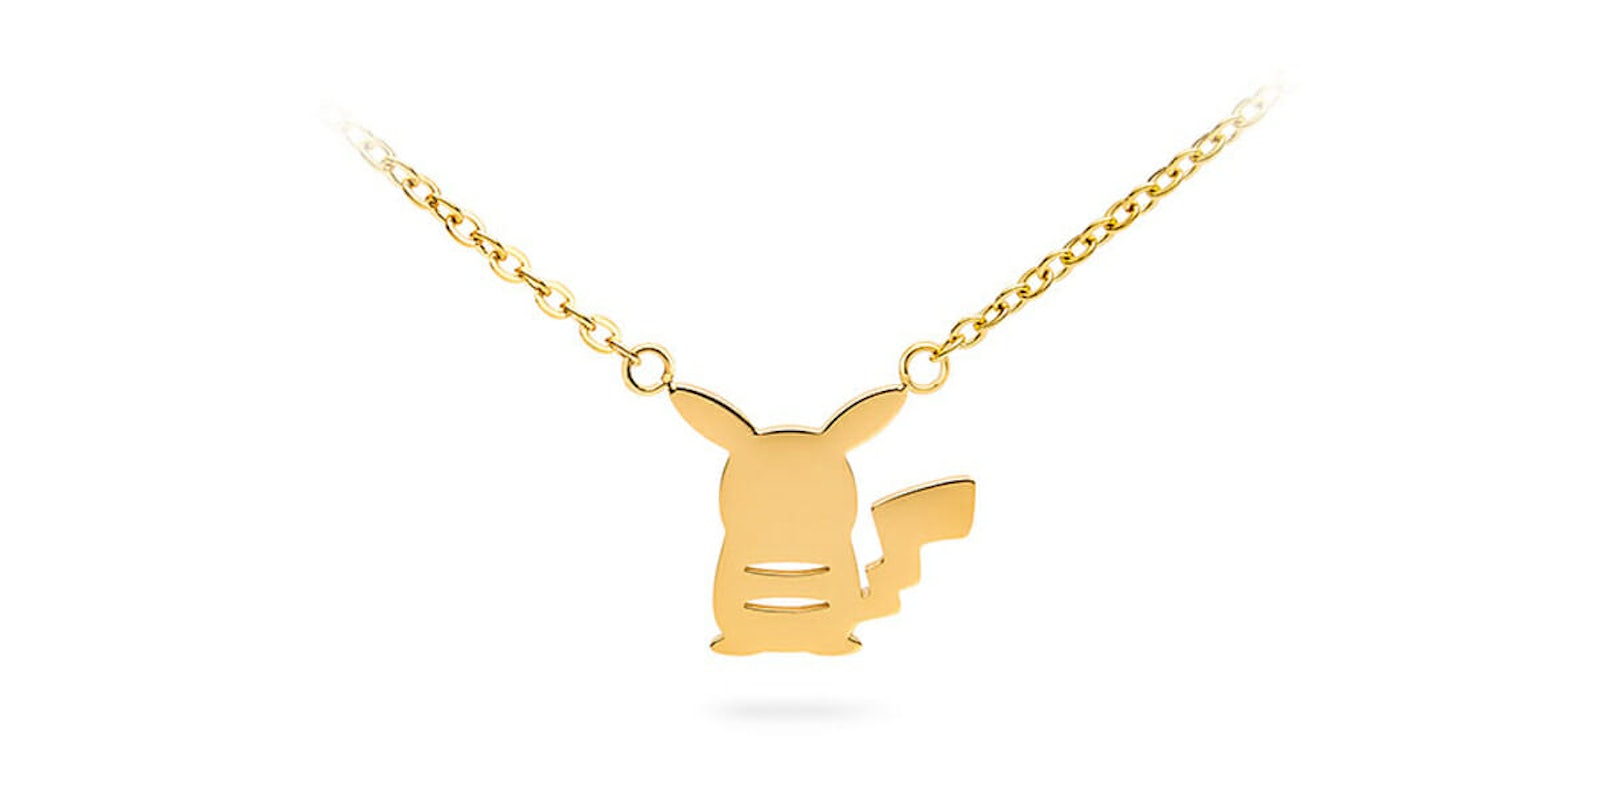 Pikachu necklace